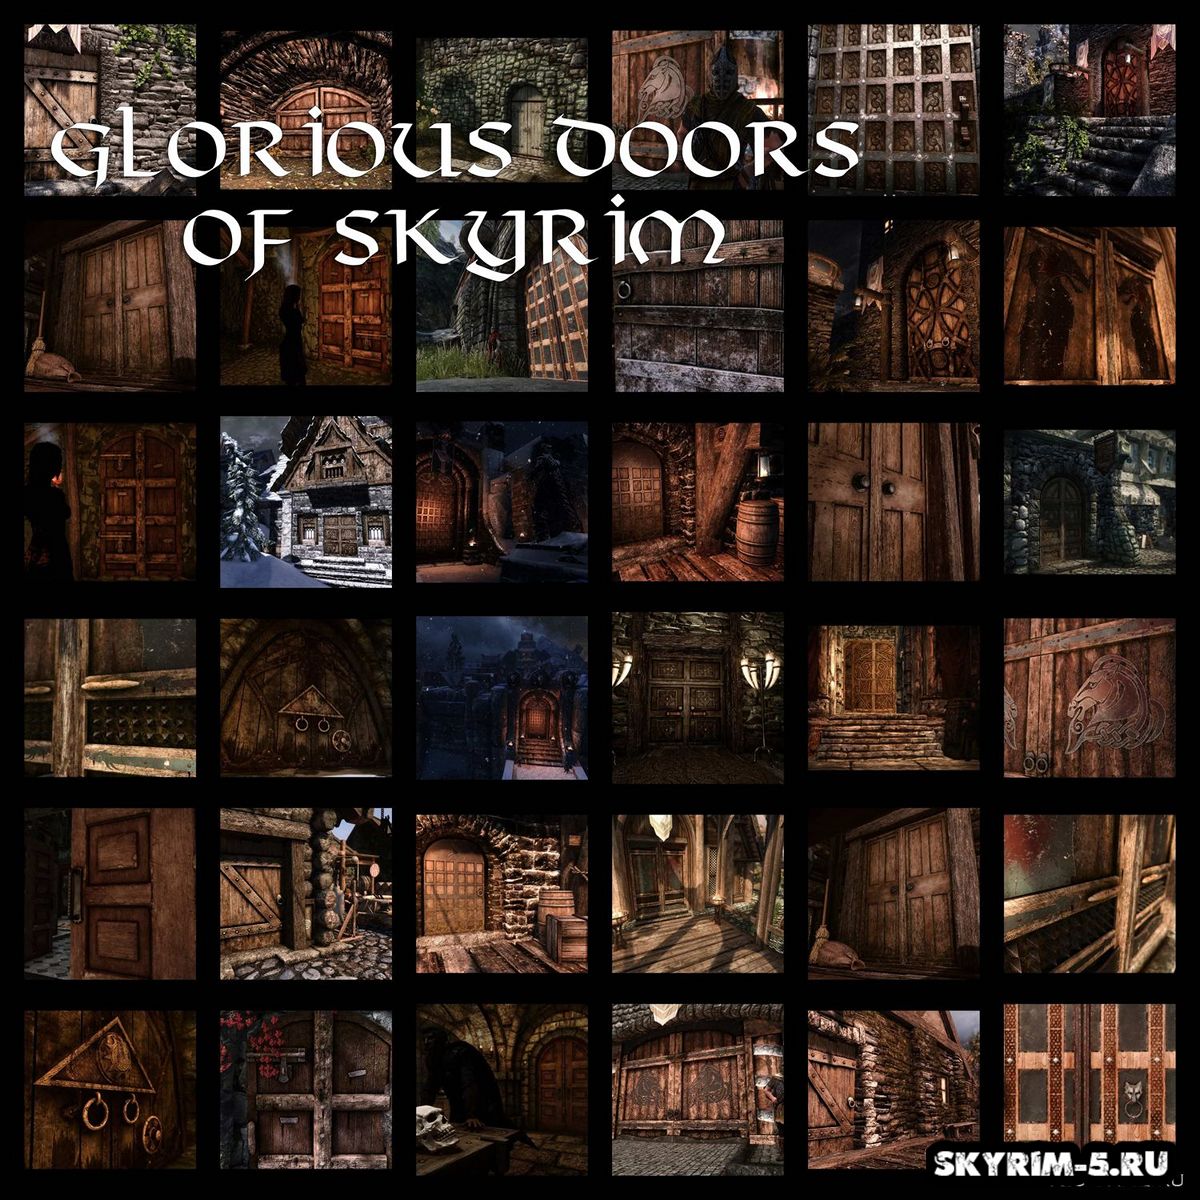 Glorious Doors of Skyrim - Переработка дверей